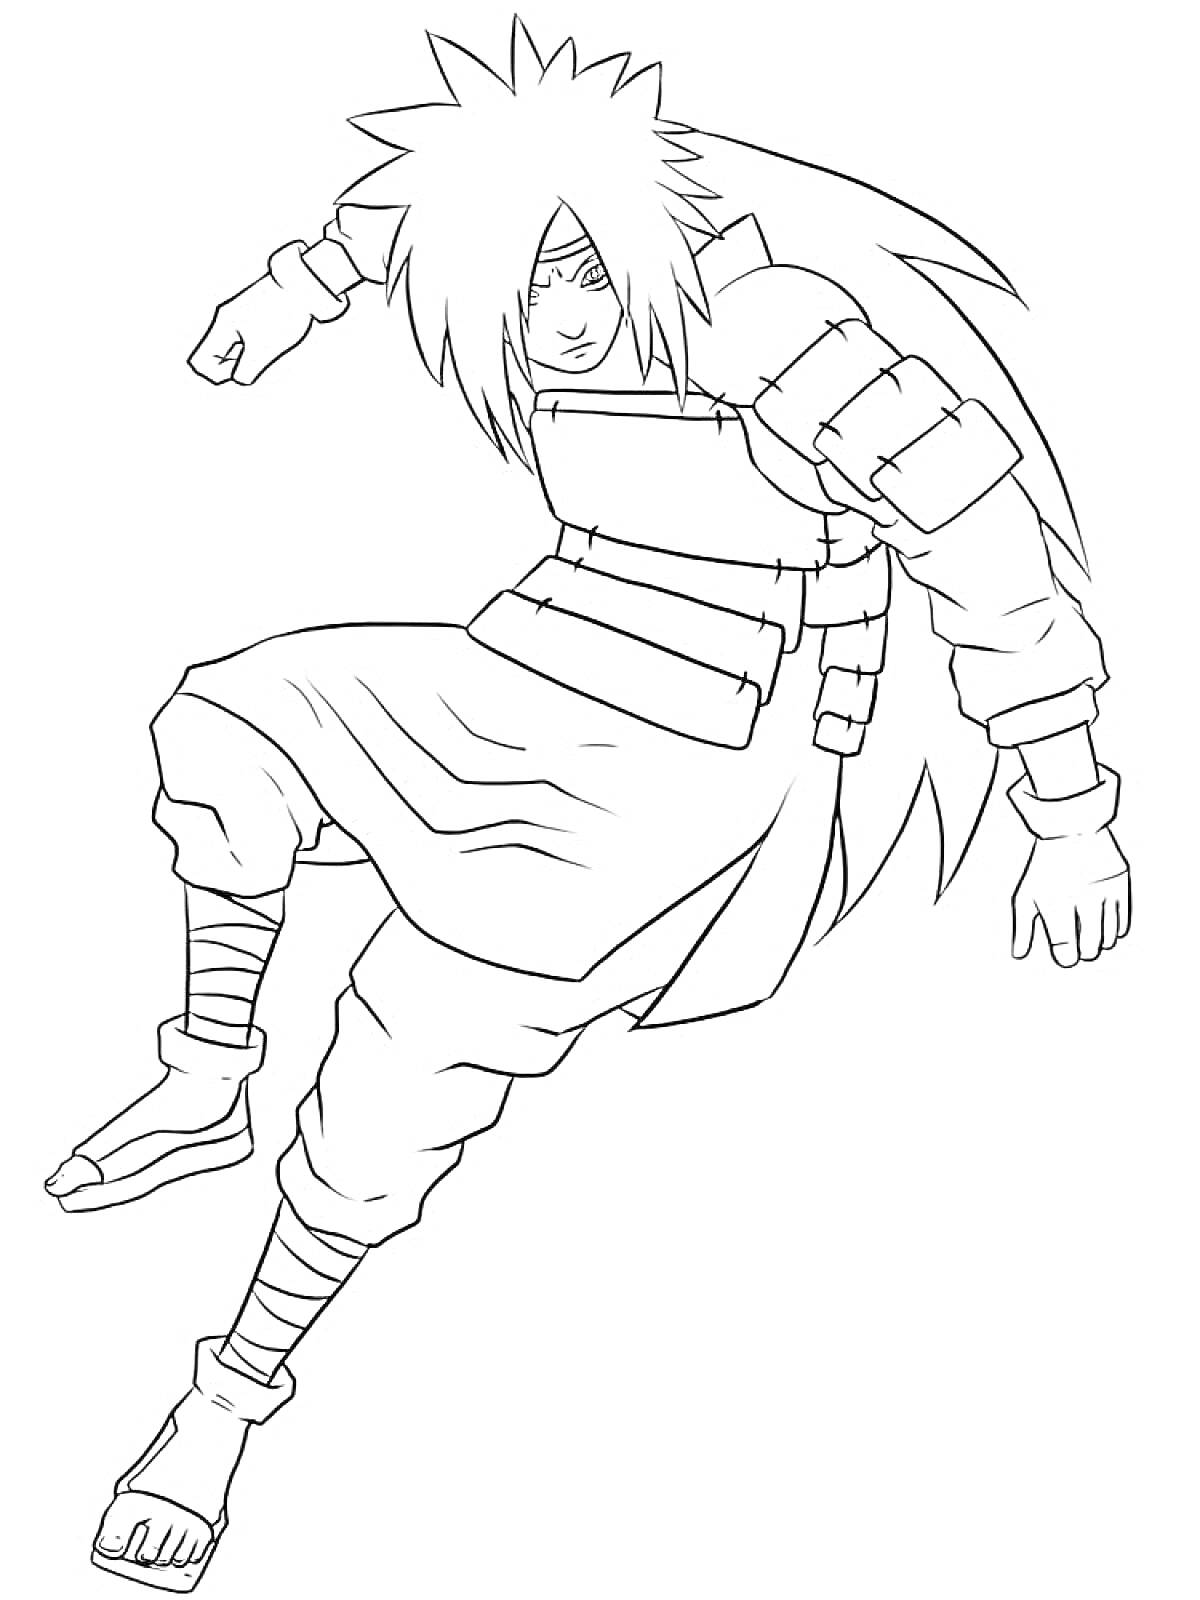 Раскраска Воин Наруто в доспехах с длинными волосами и протектором на лбу, в прыжке